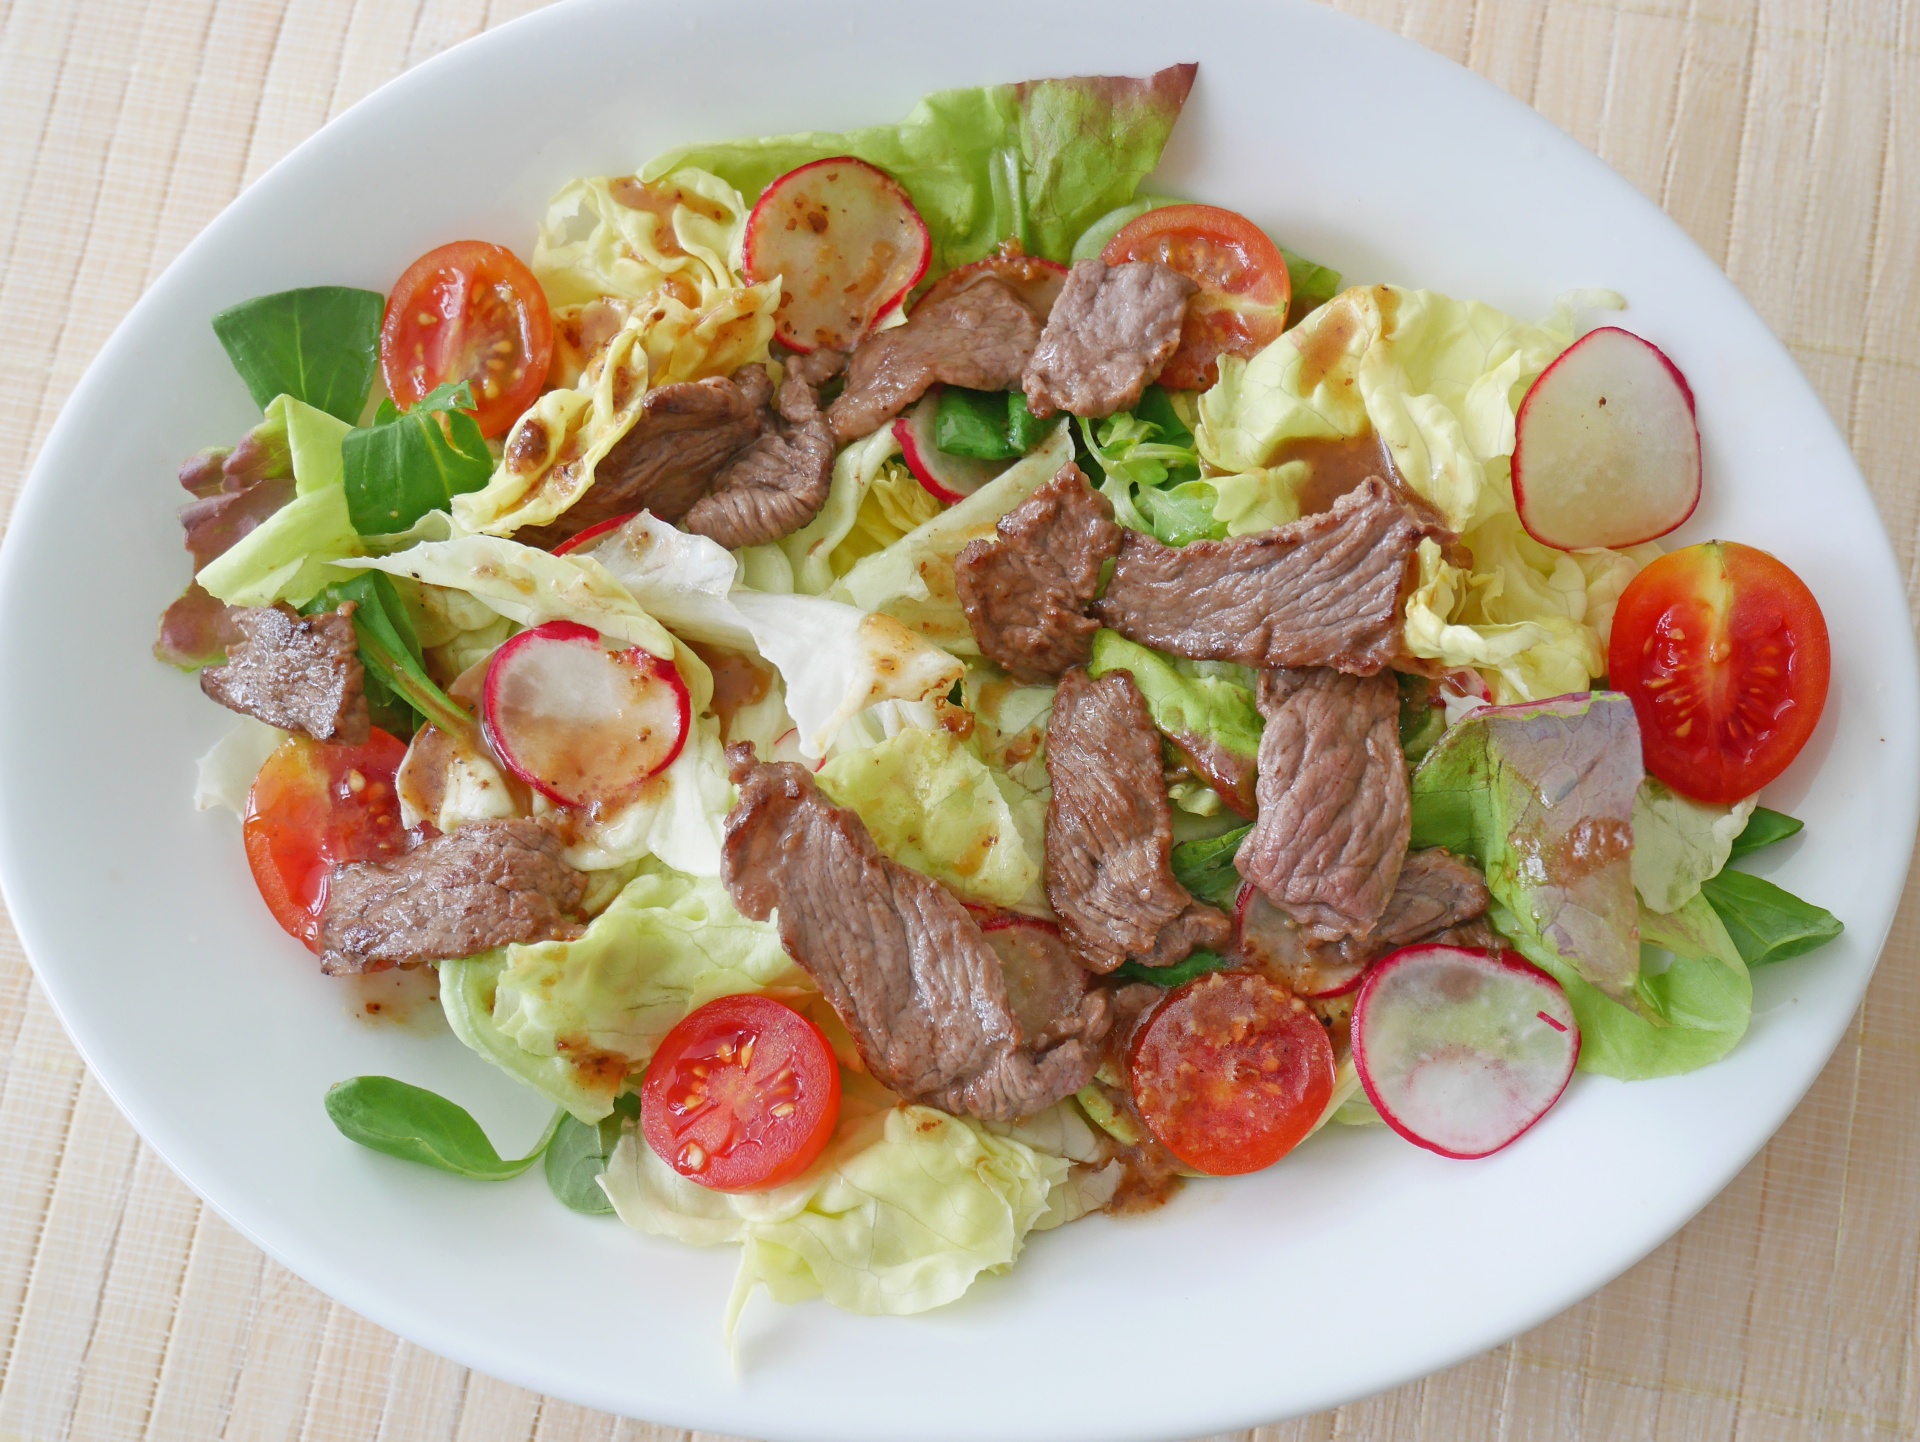 Ochsenfetzen auf Salat mit
              Malzbier-Senf-Dressing